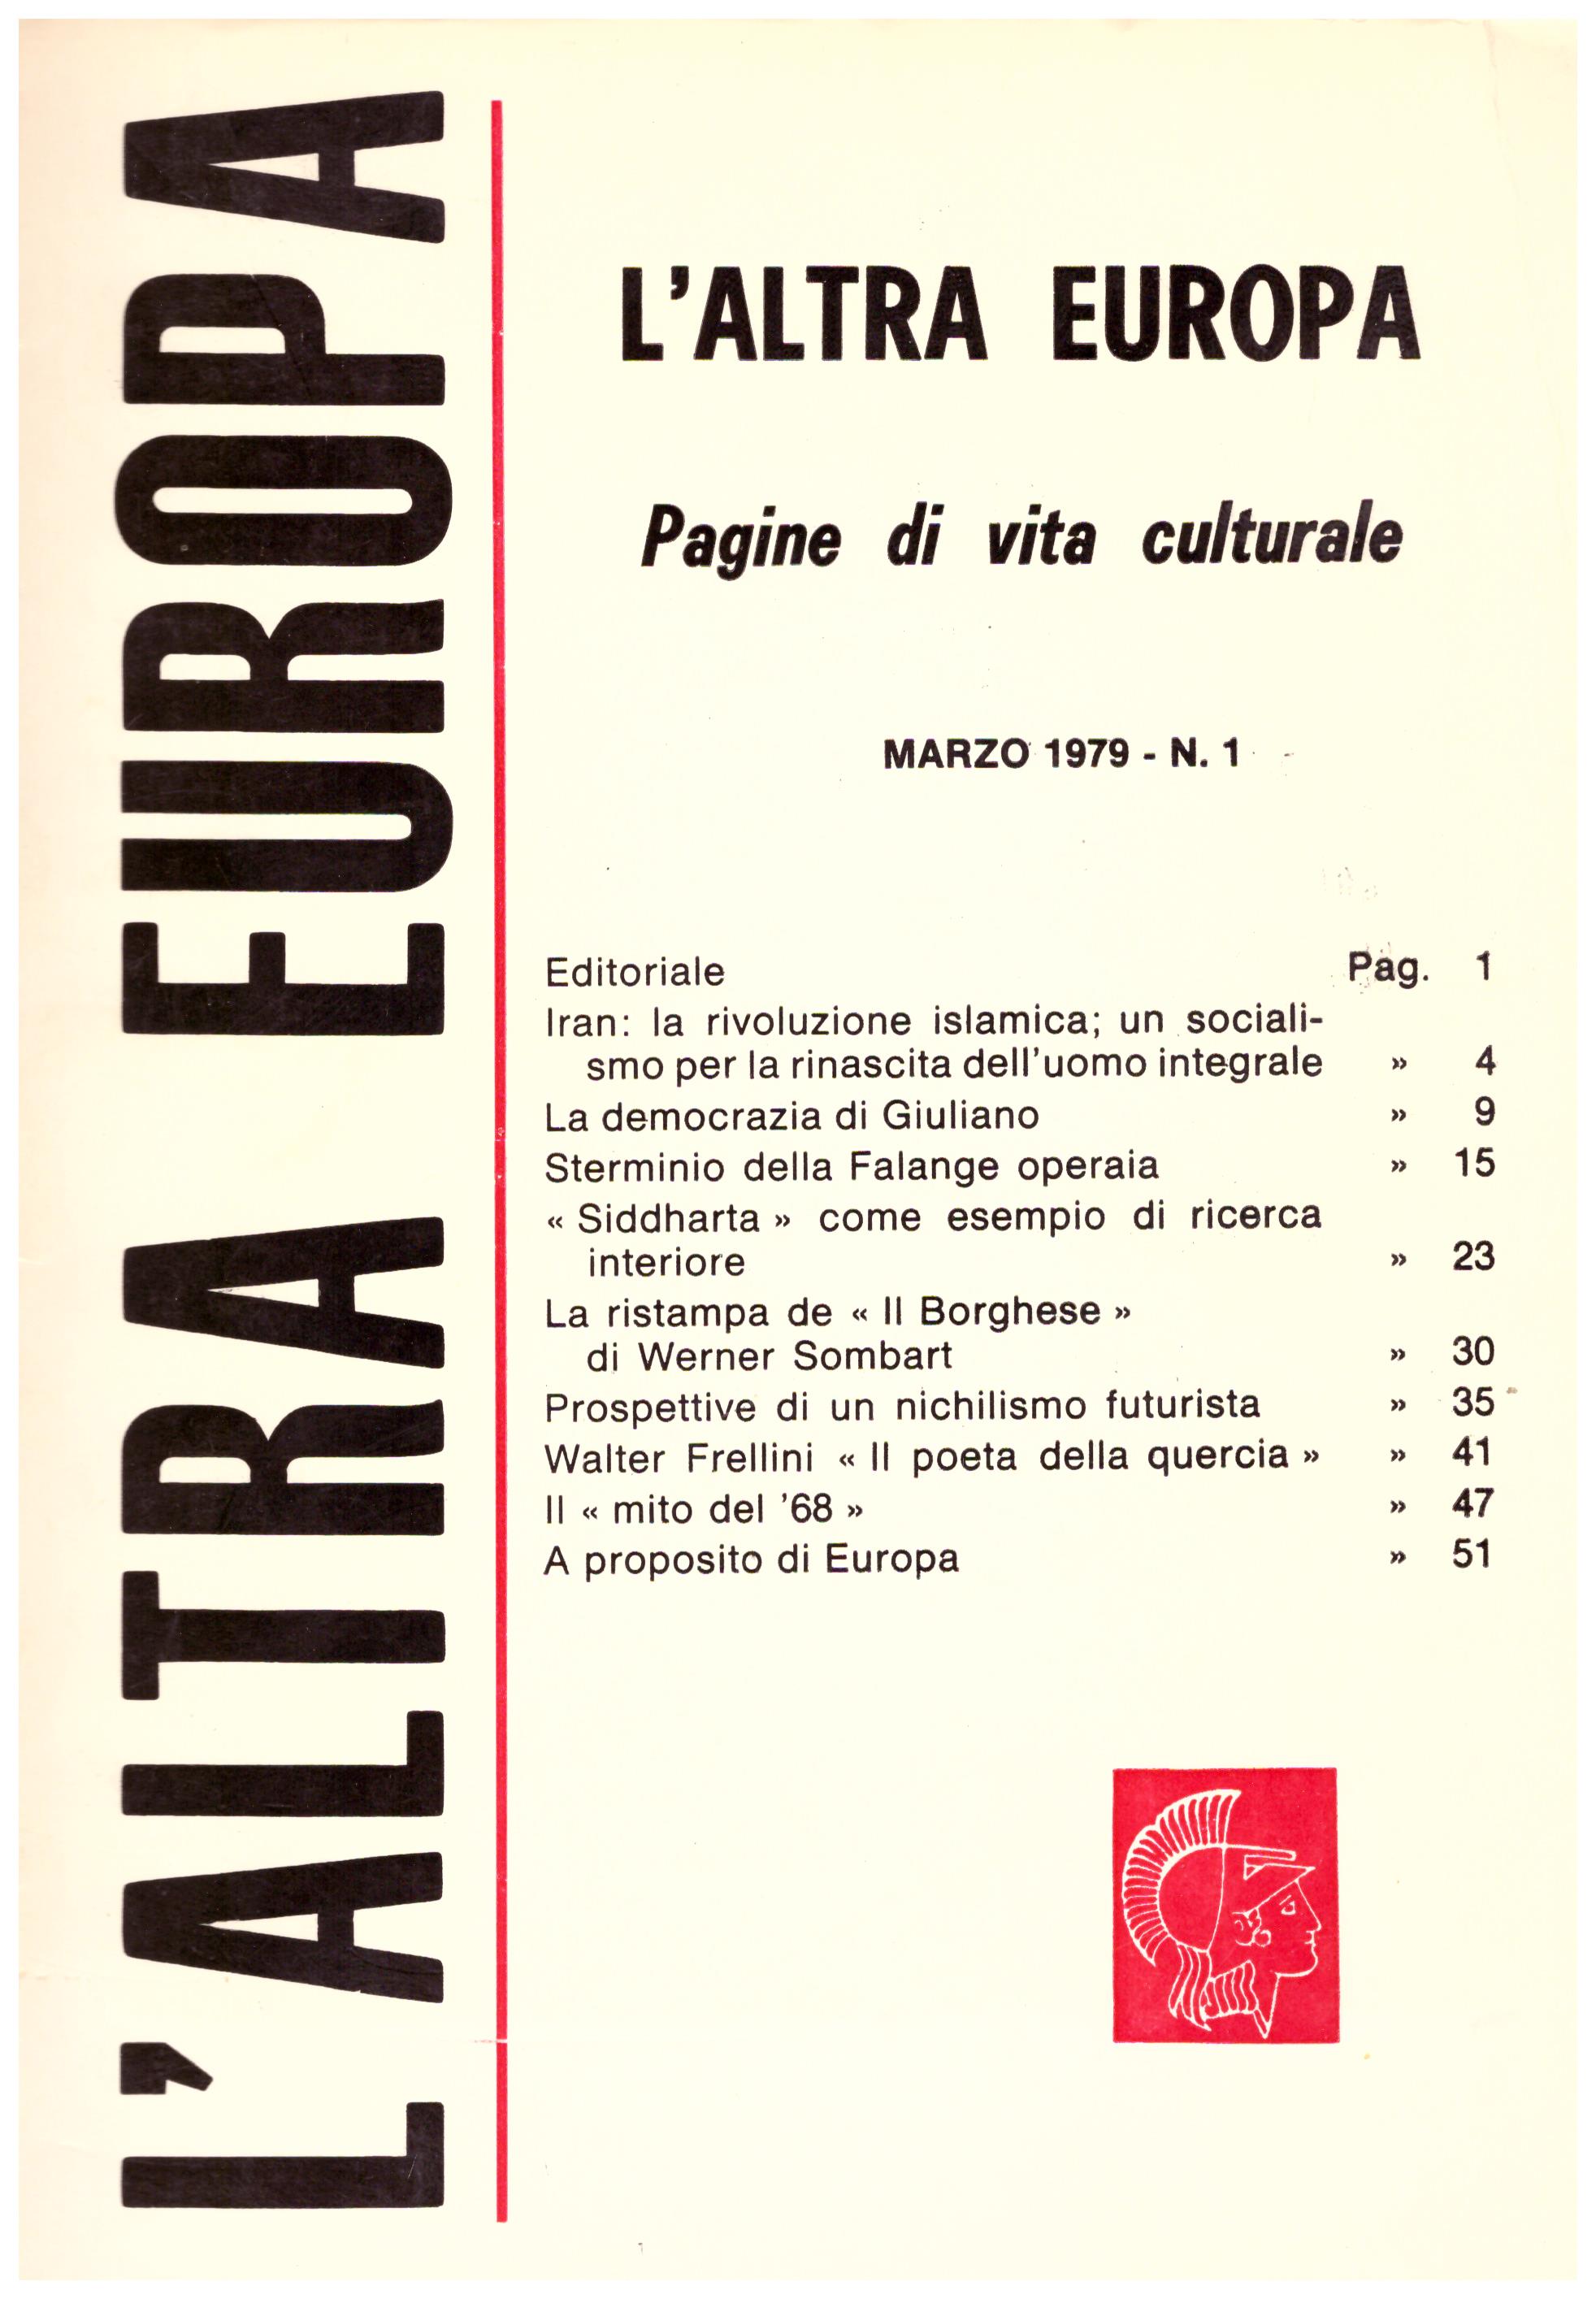  L’altra Europa, pagine di vita culturale. Marzo 1979.